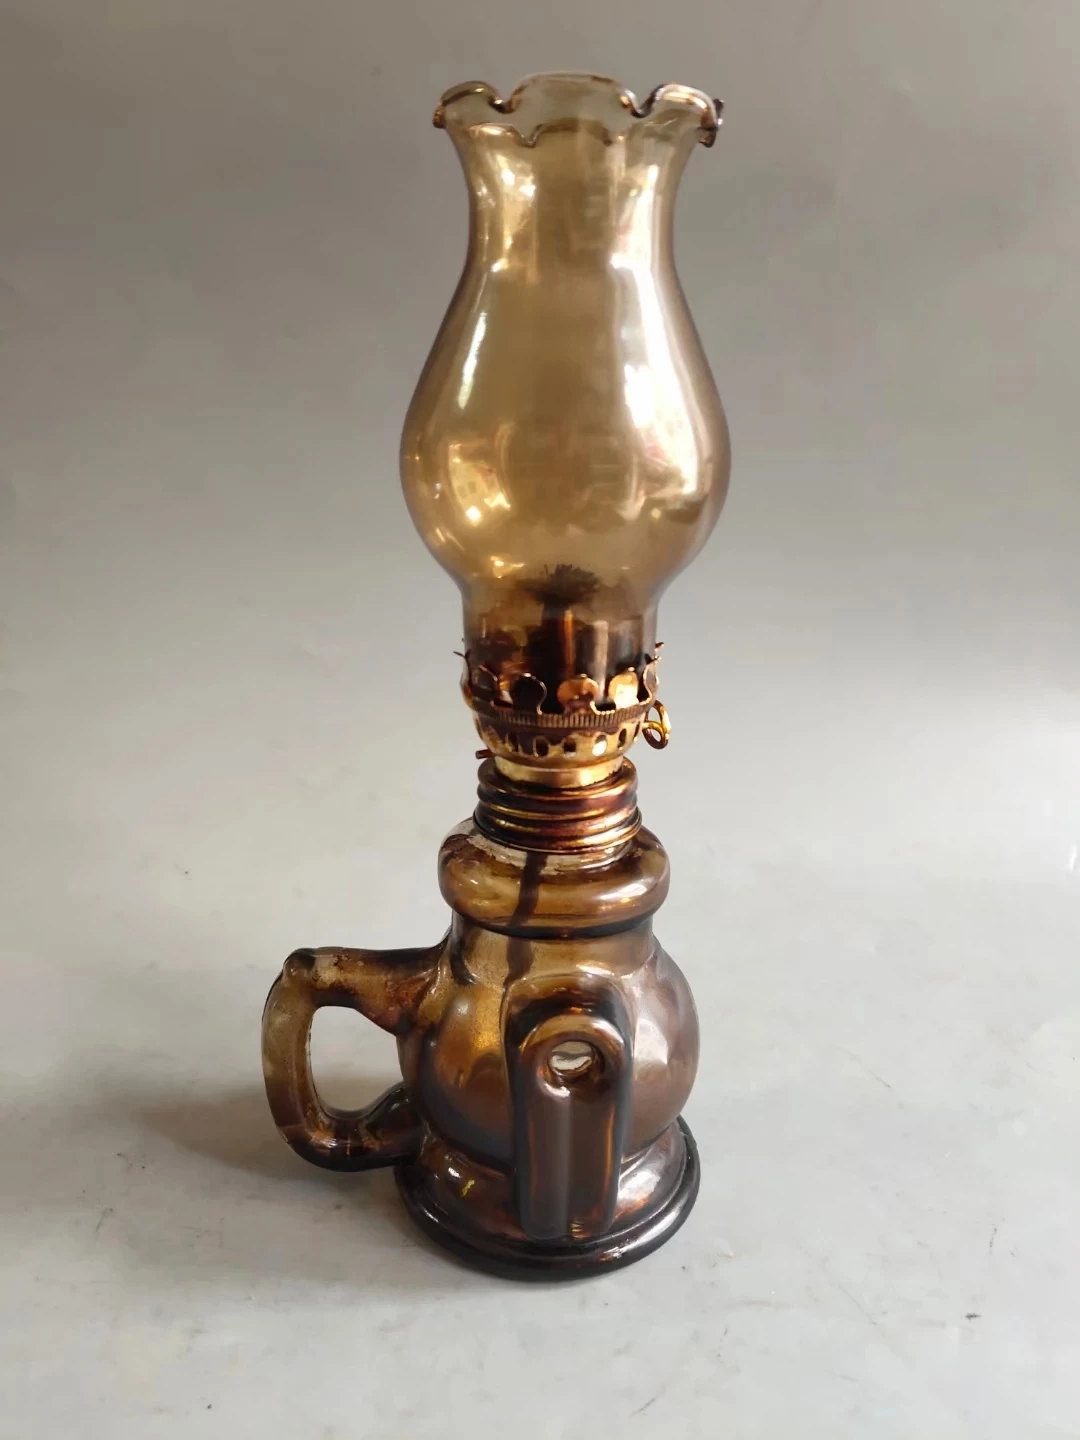 

Старинная стеклянная масляная лампа, около 70 истории, традиционная переработка старых предметов, полностью Сохраненная, может использоваться как обычно, для домашнего декора